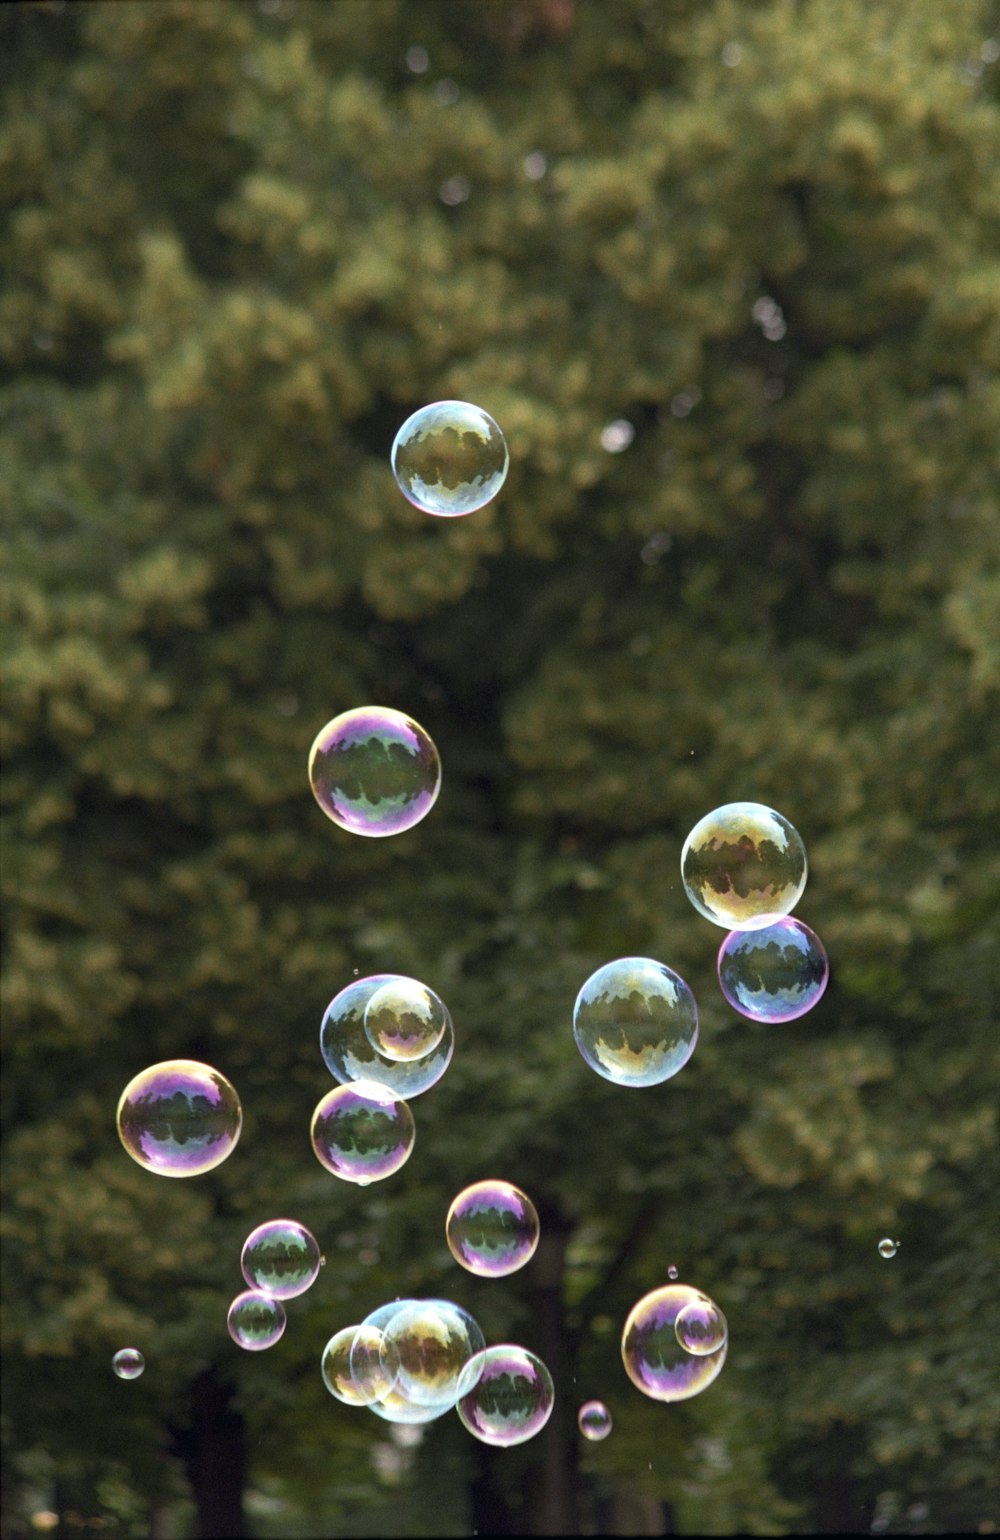 Burbujas verdes y blancas durante el día